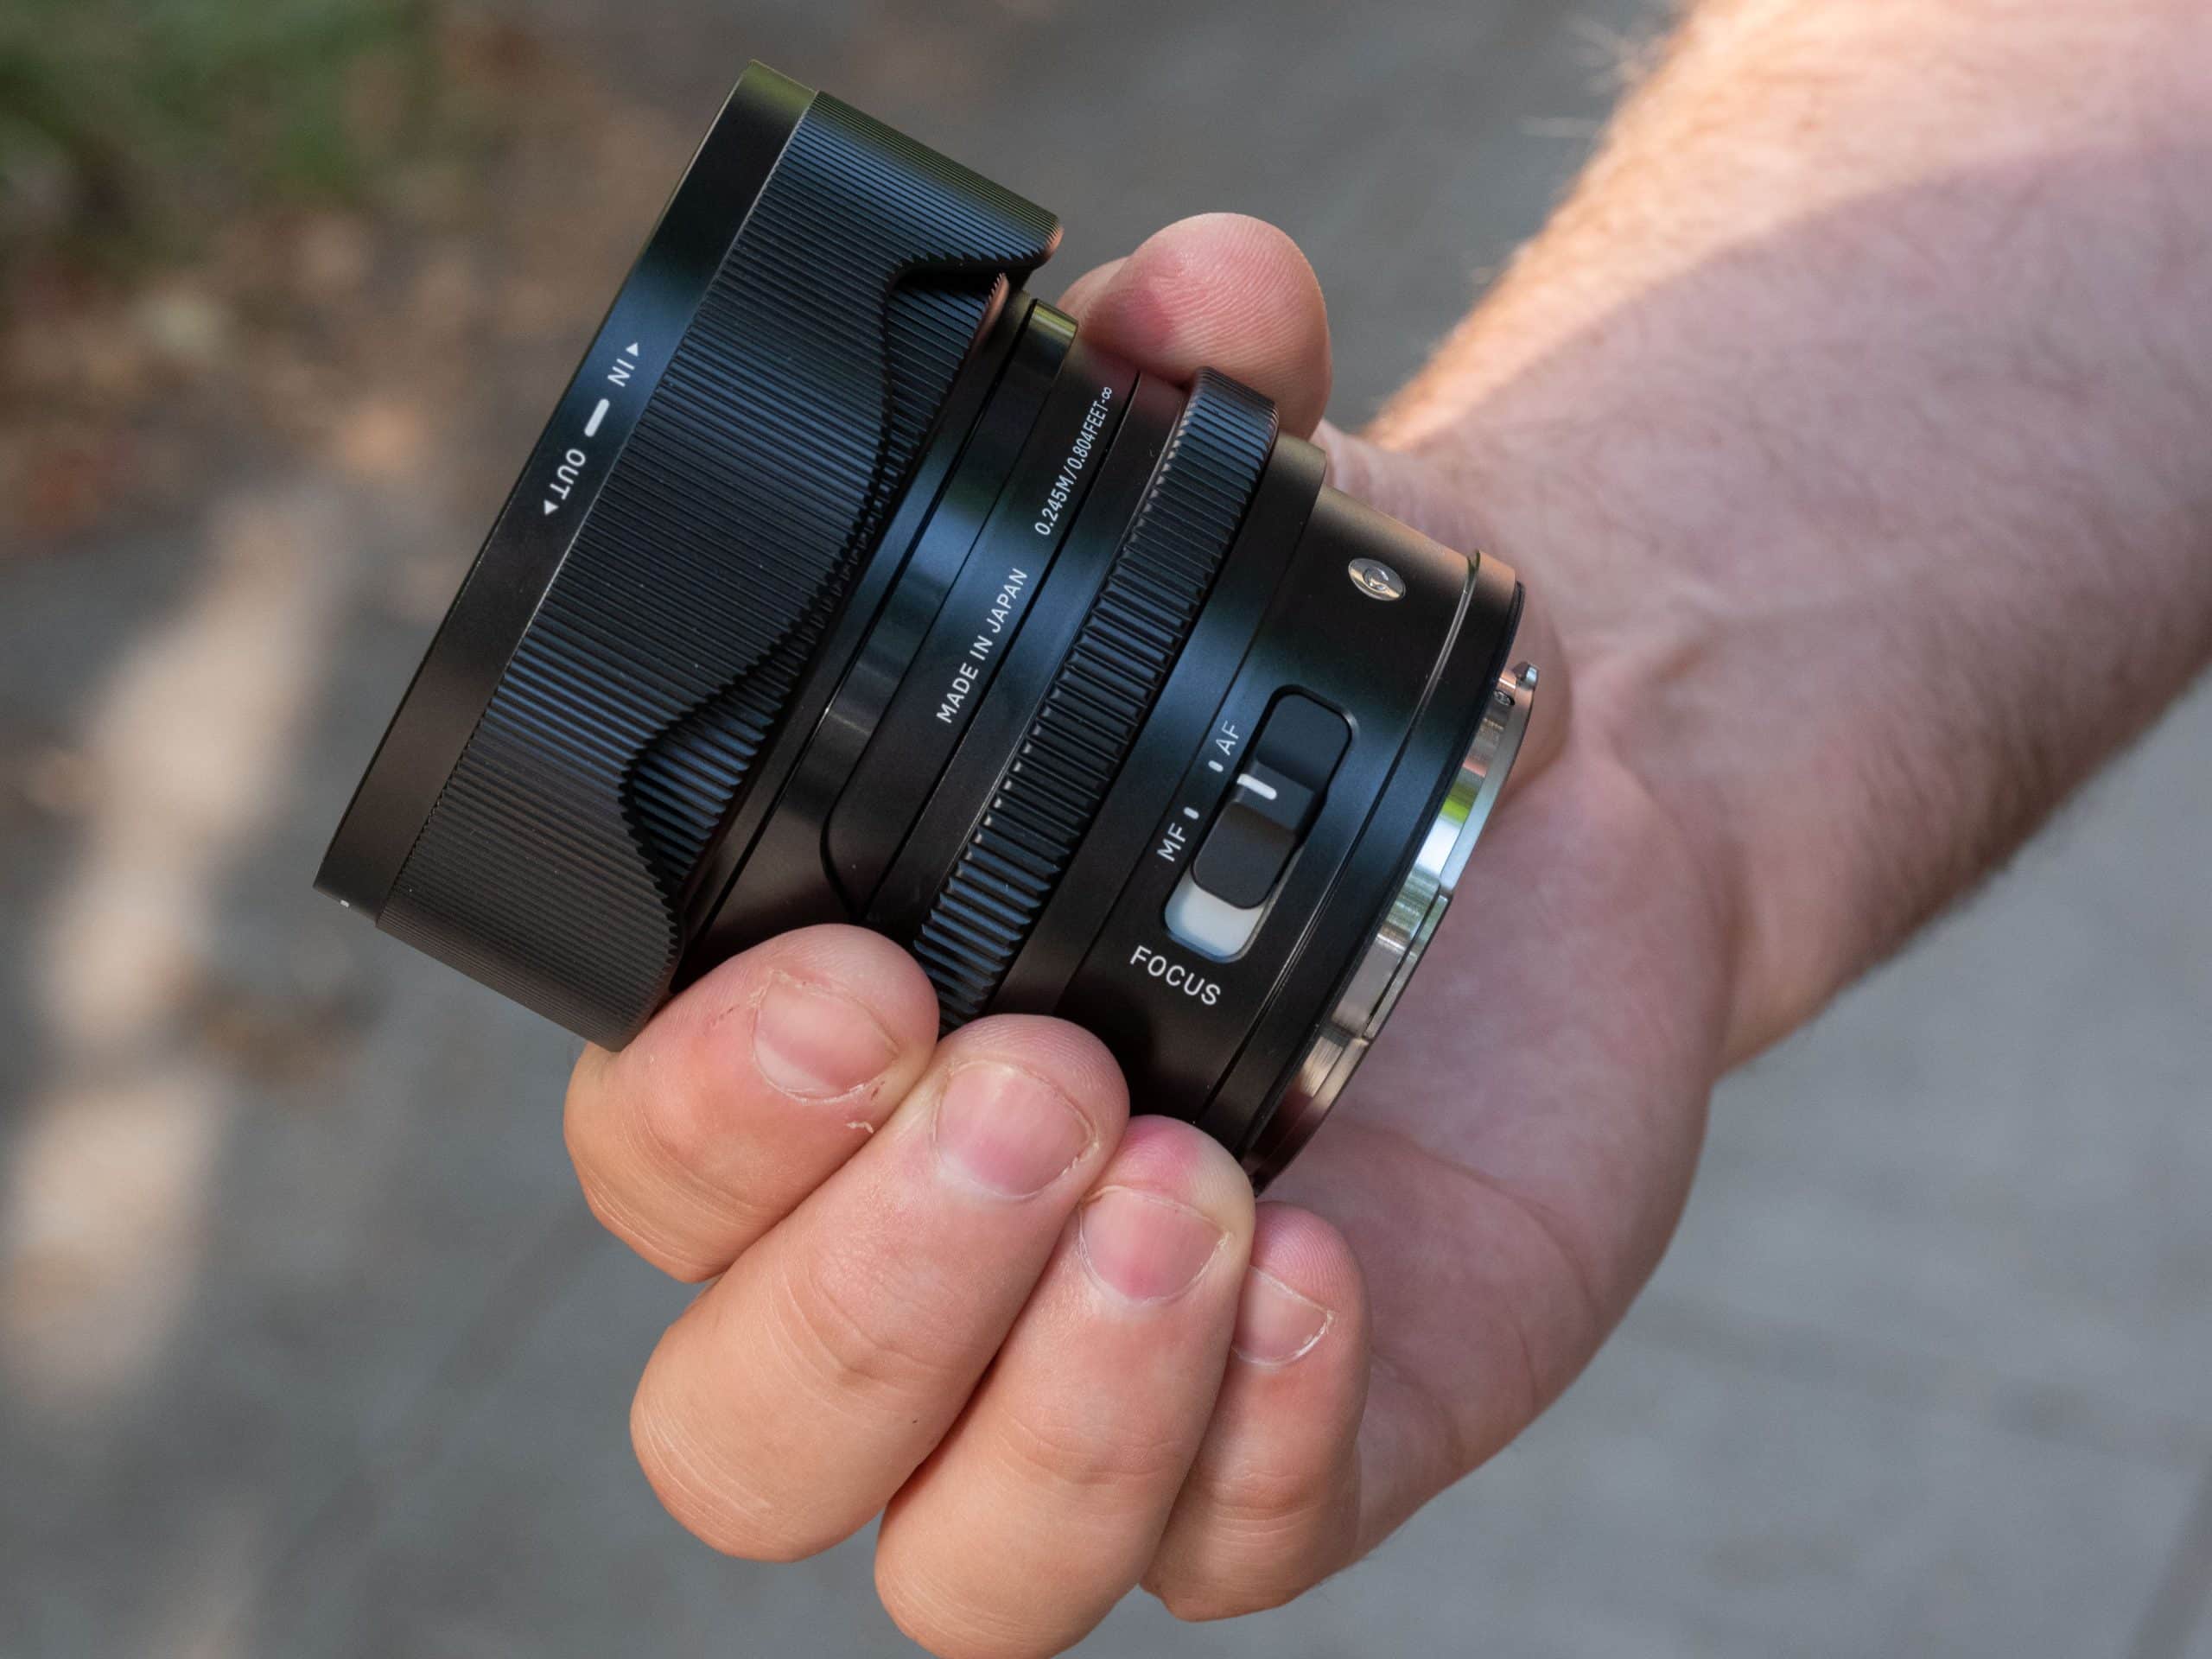 Ống kính Sigma 24mm F2 DG DN cho Sony E